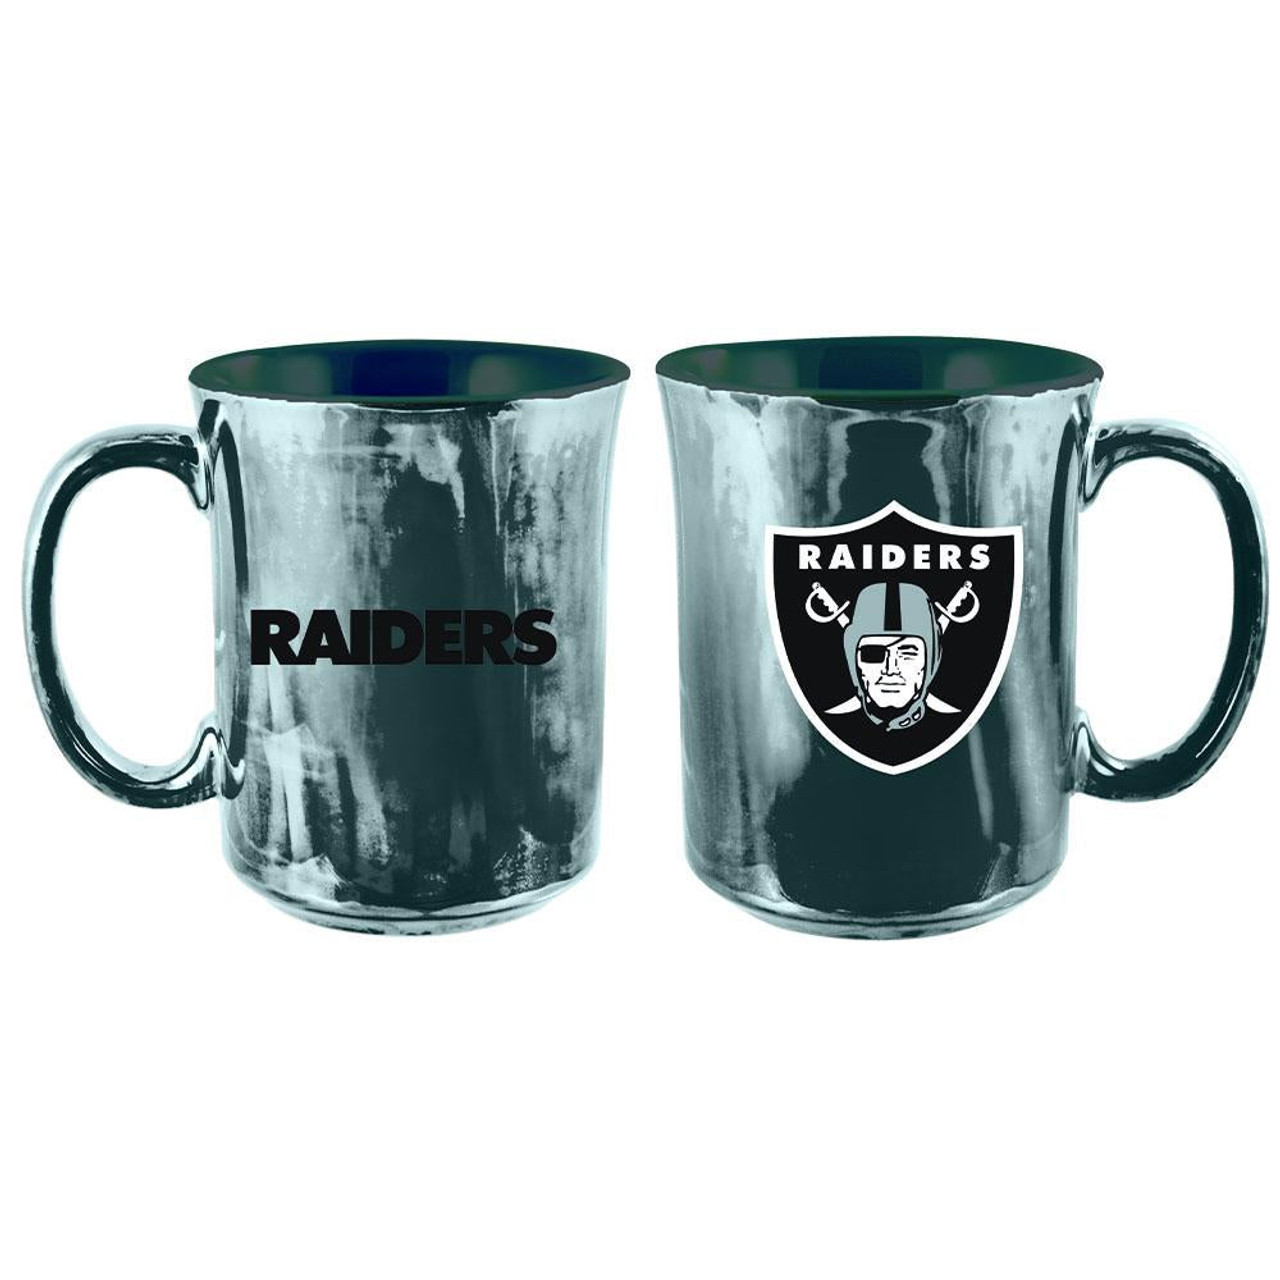 Las Vegas Raiders Football Mug